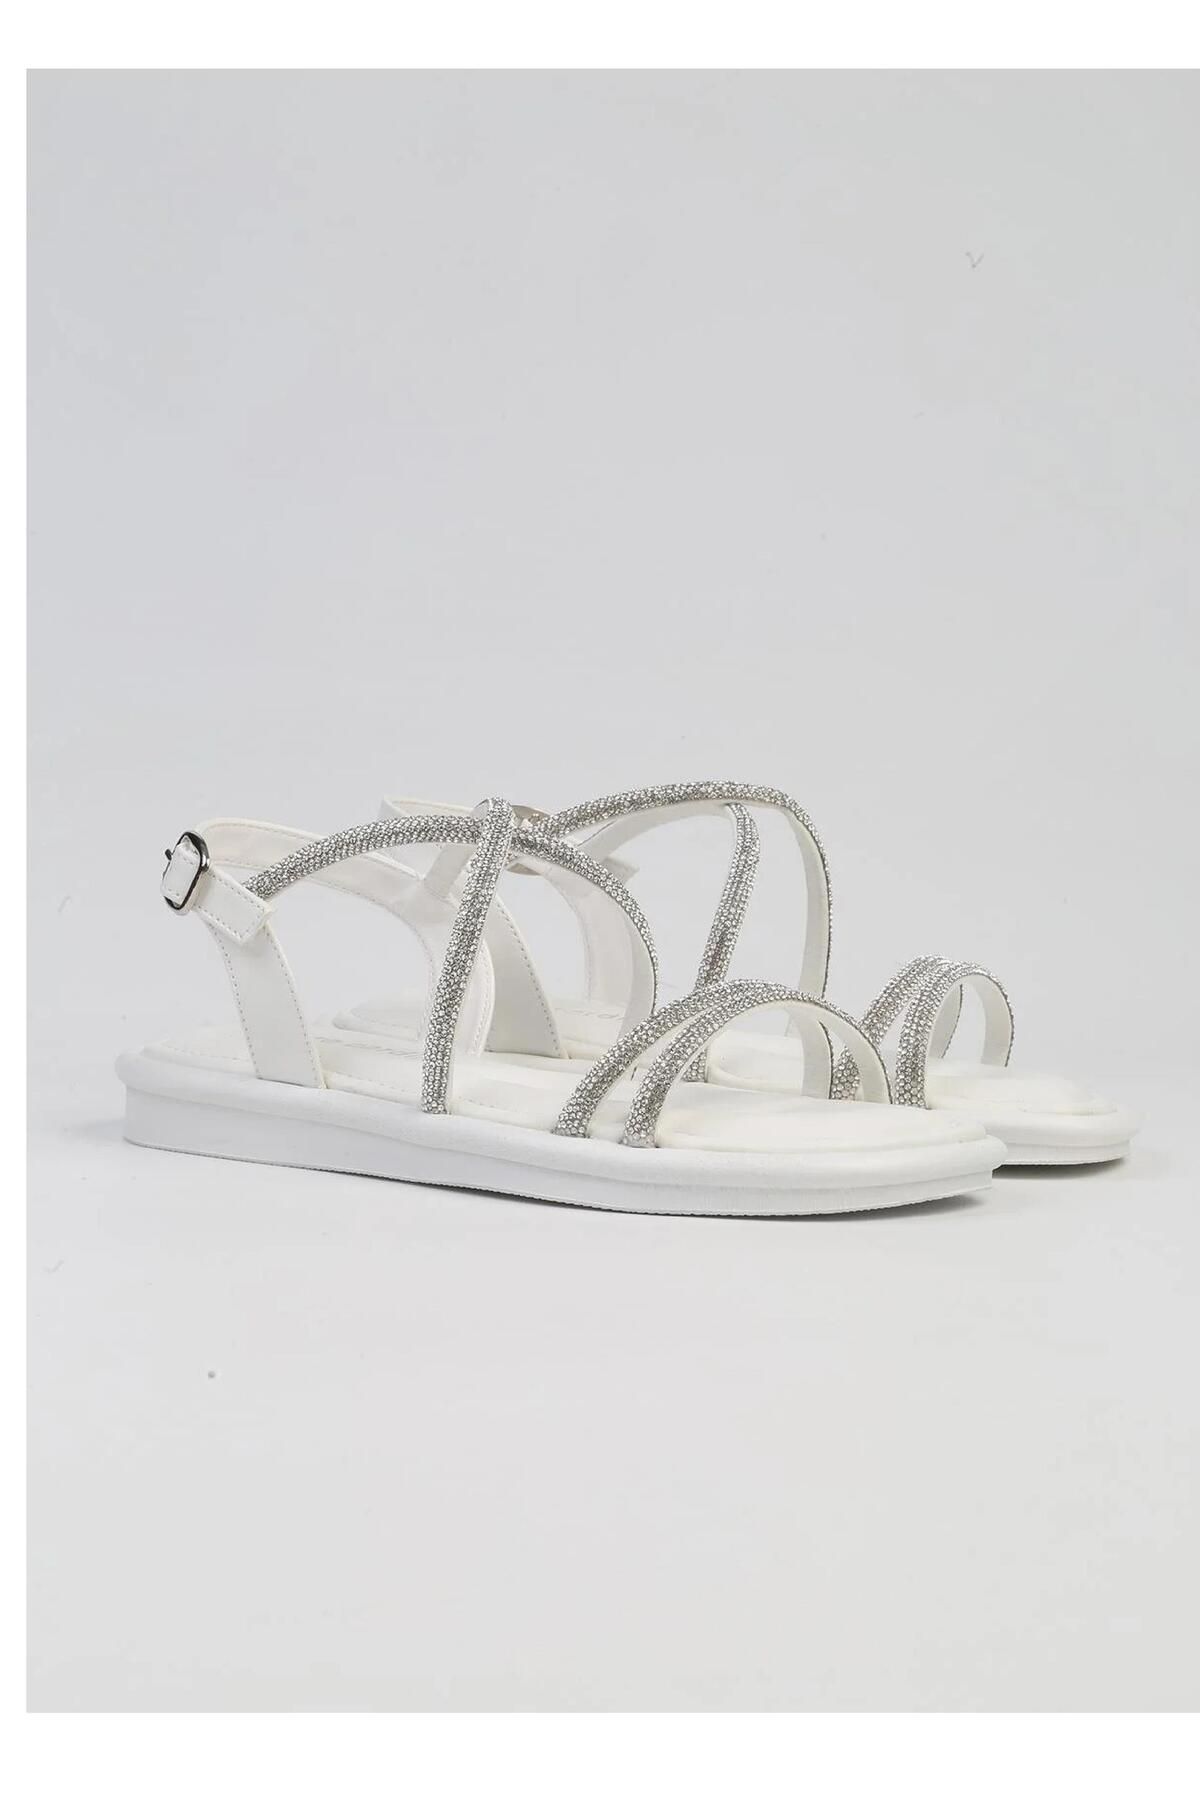 Pierre Cardin PC-5103 Beyaz Kadın Sandalet